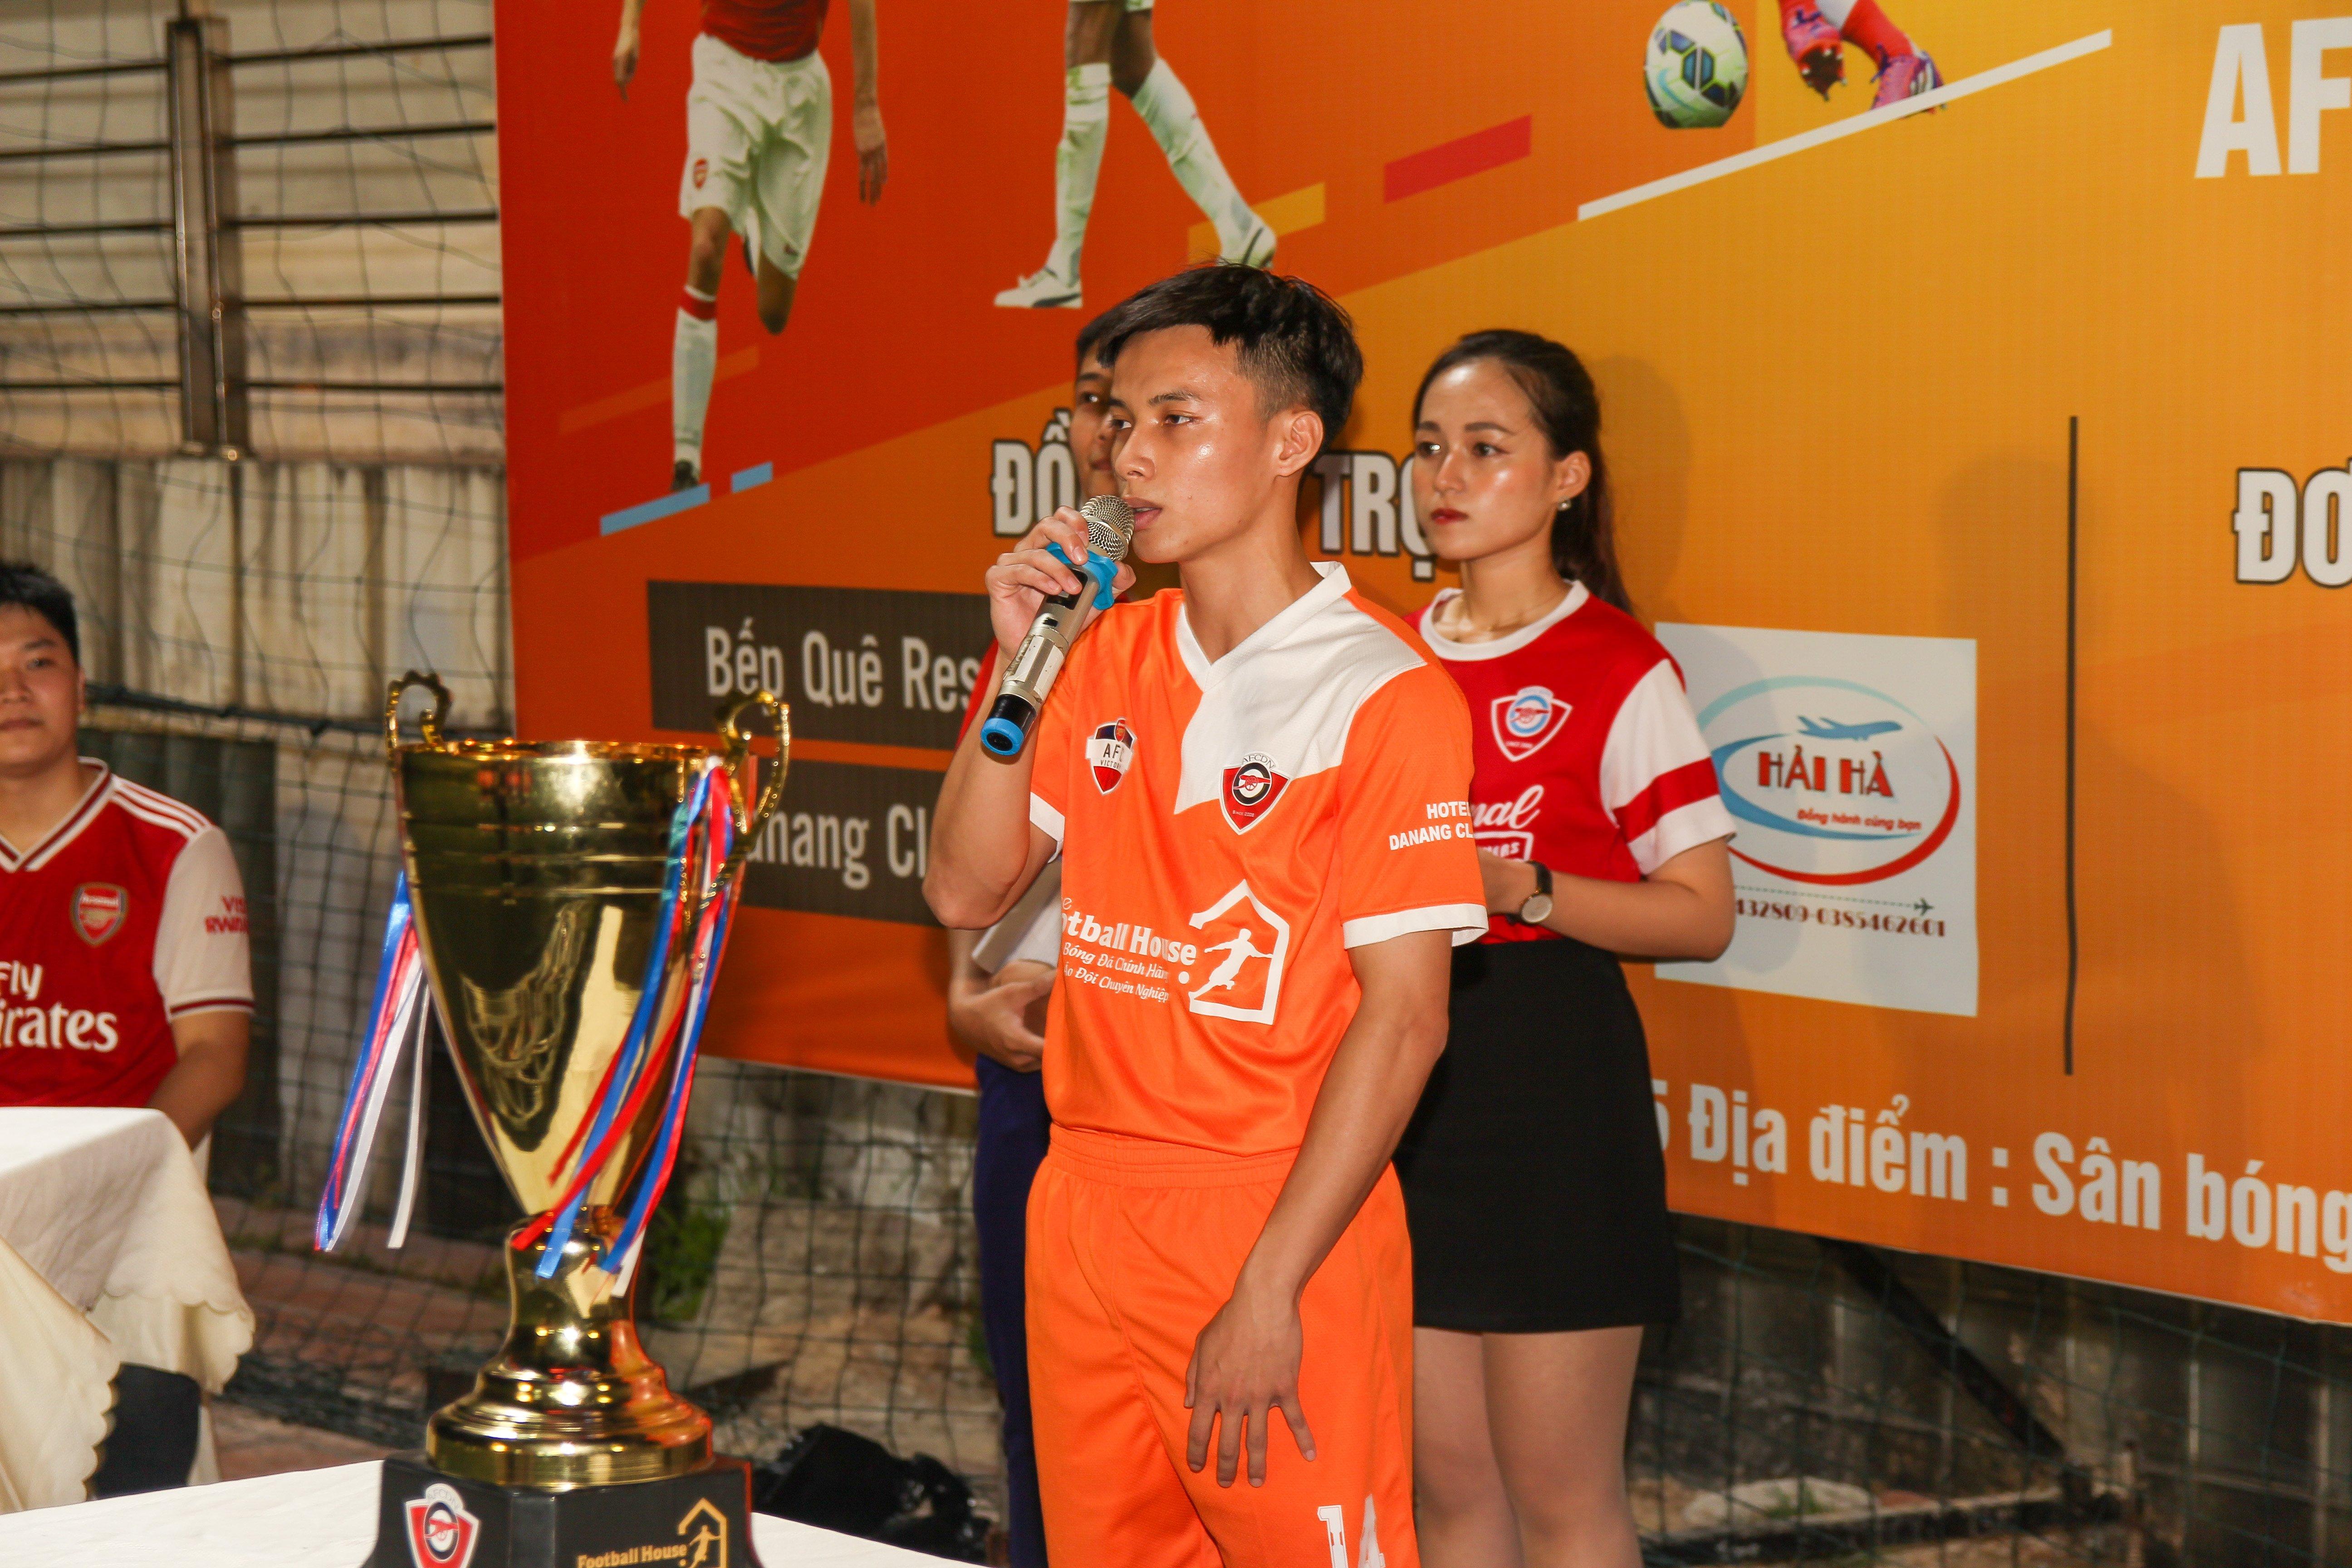 Cầu thủ Lê Minh Anh Tài (AFC Victory) đọc lời tuyên thệ. Ảnh: BTC